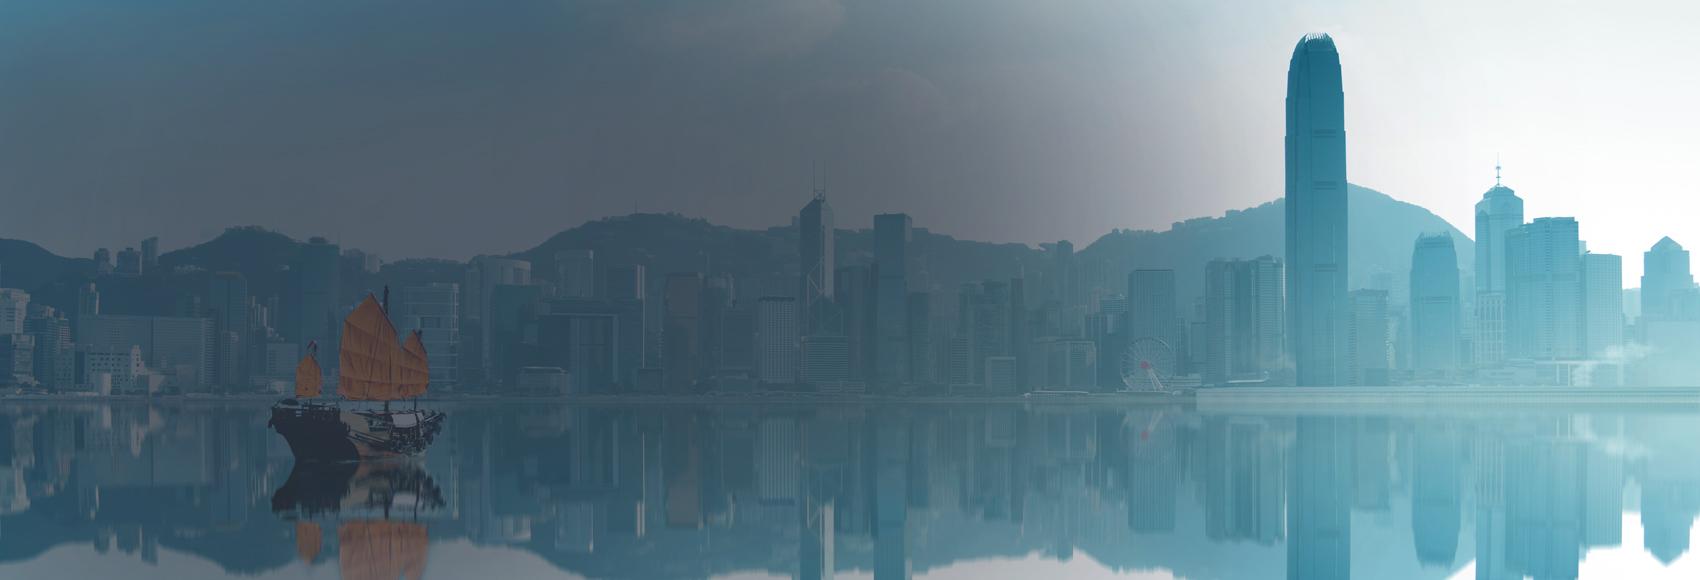 Hong Kong View of the City